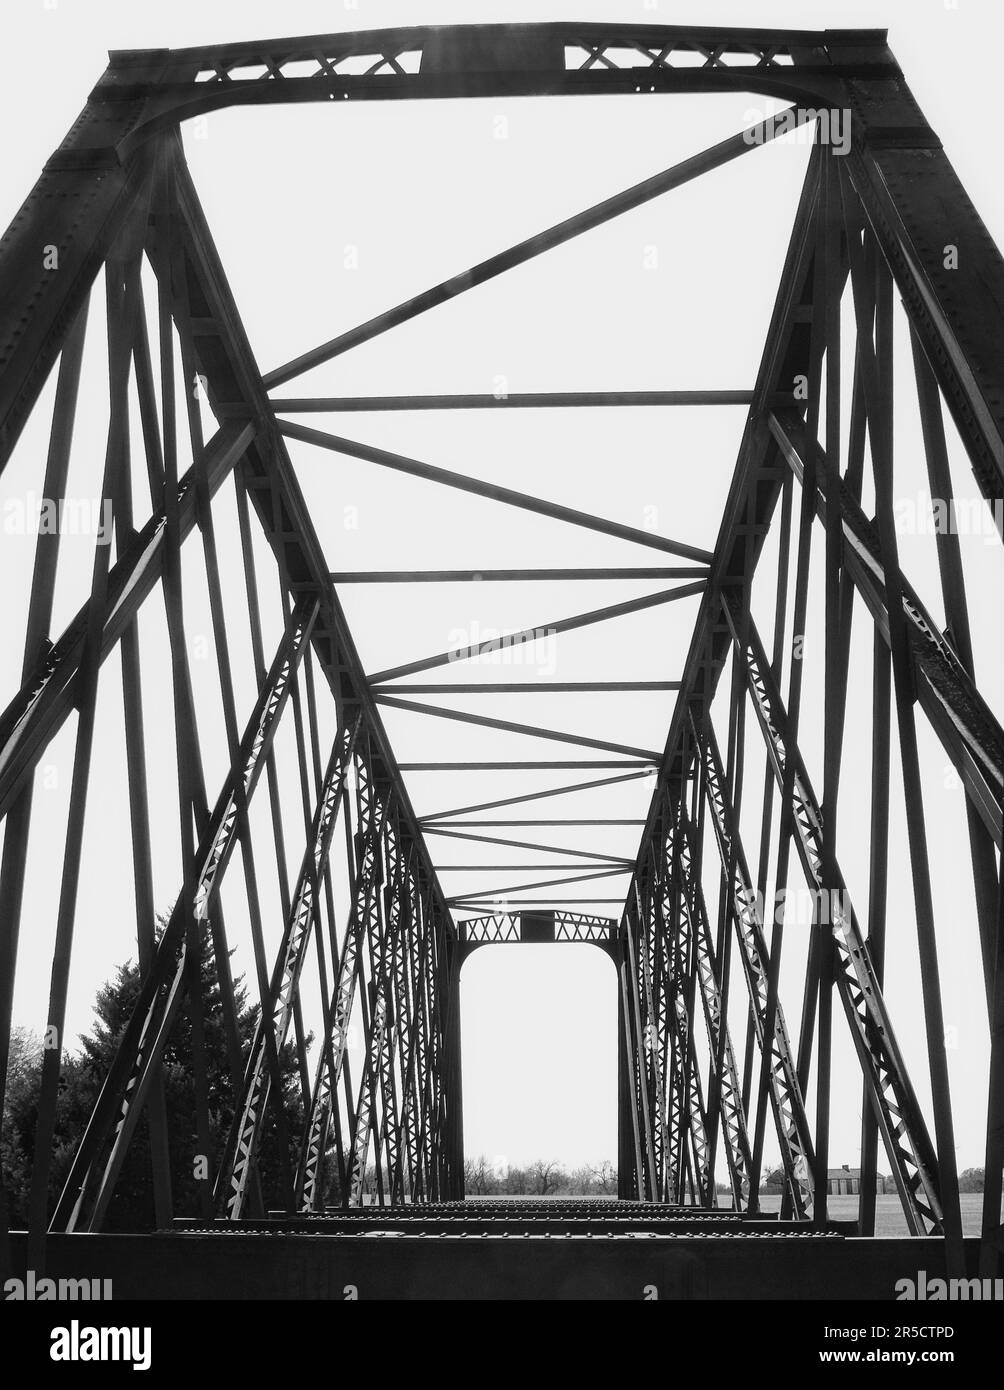 Image en noir et blanc d'un pont de treillis d'acier situé au parc national de fort Richardson, à l'extérieur de Jacksboro, Texas. Contrastes sombres, ciel blanc. Banque D'Images